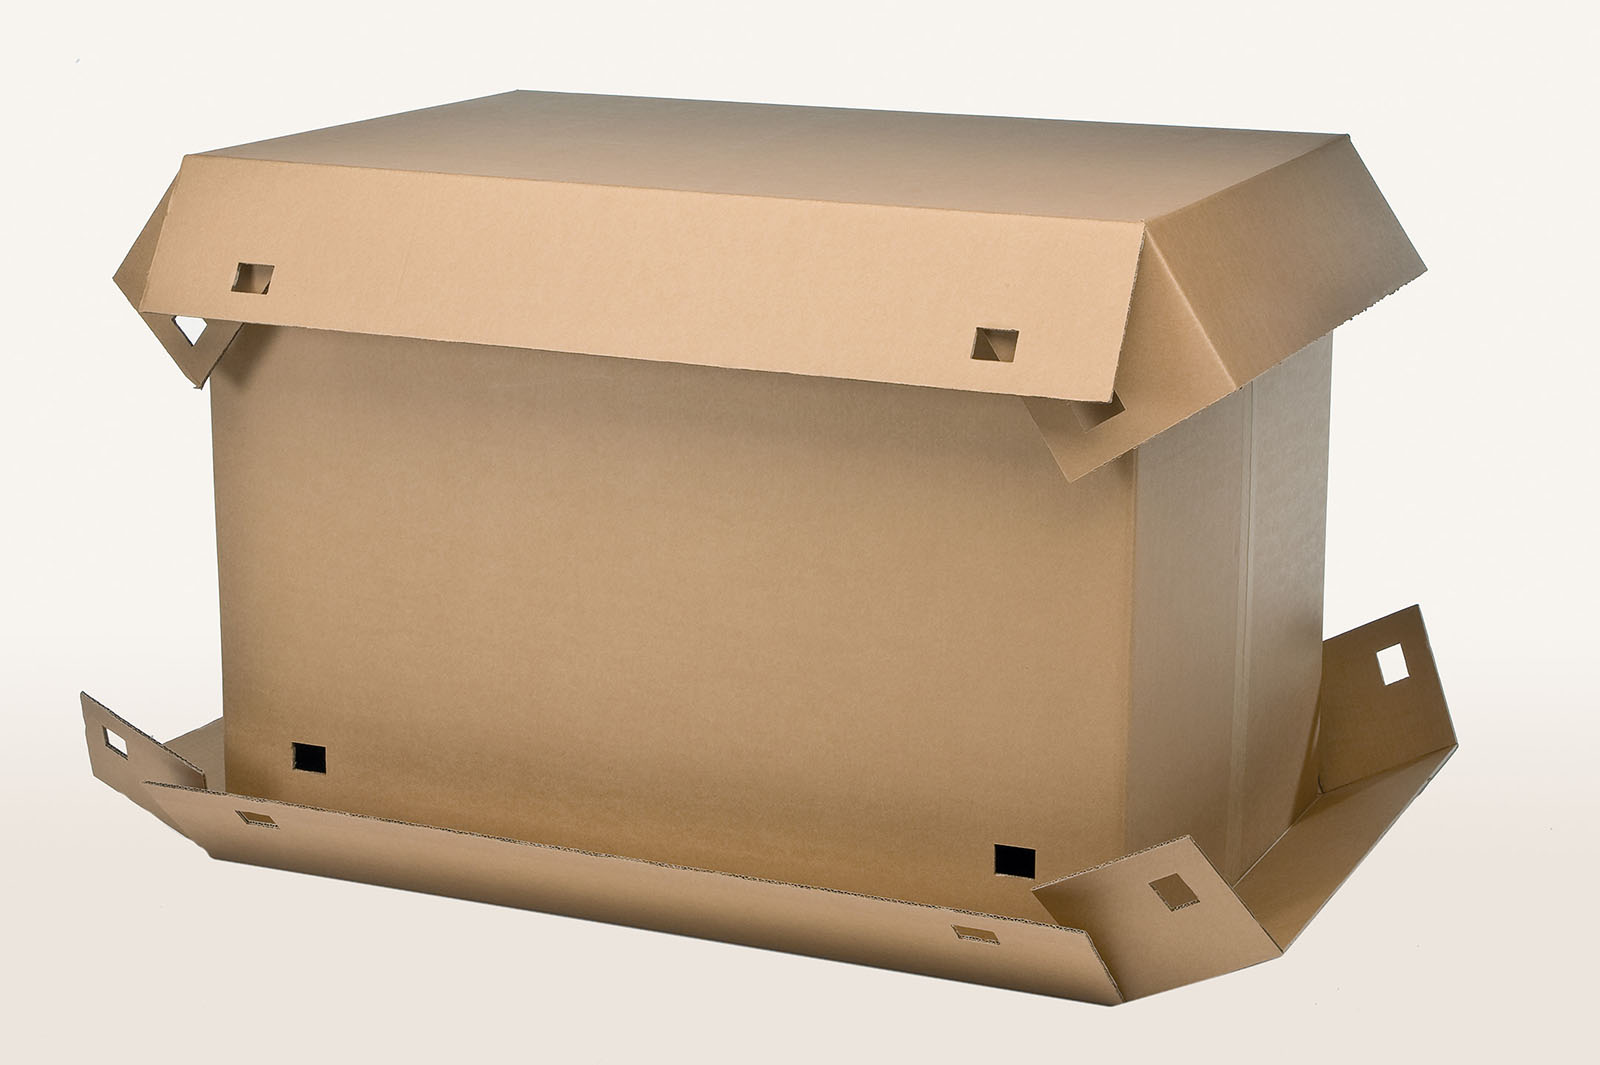 Die Transportbox besteht aus einem Kartonboden, einem Kartondeckel und einem Stülpkarton. Innen ist eine konstruktive Schaumpolster Verpackung für eine OP-Leuchte